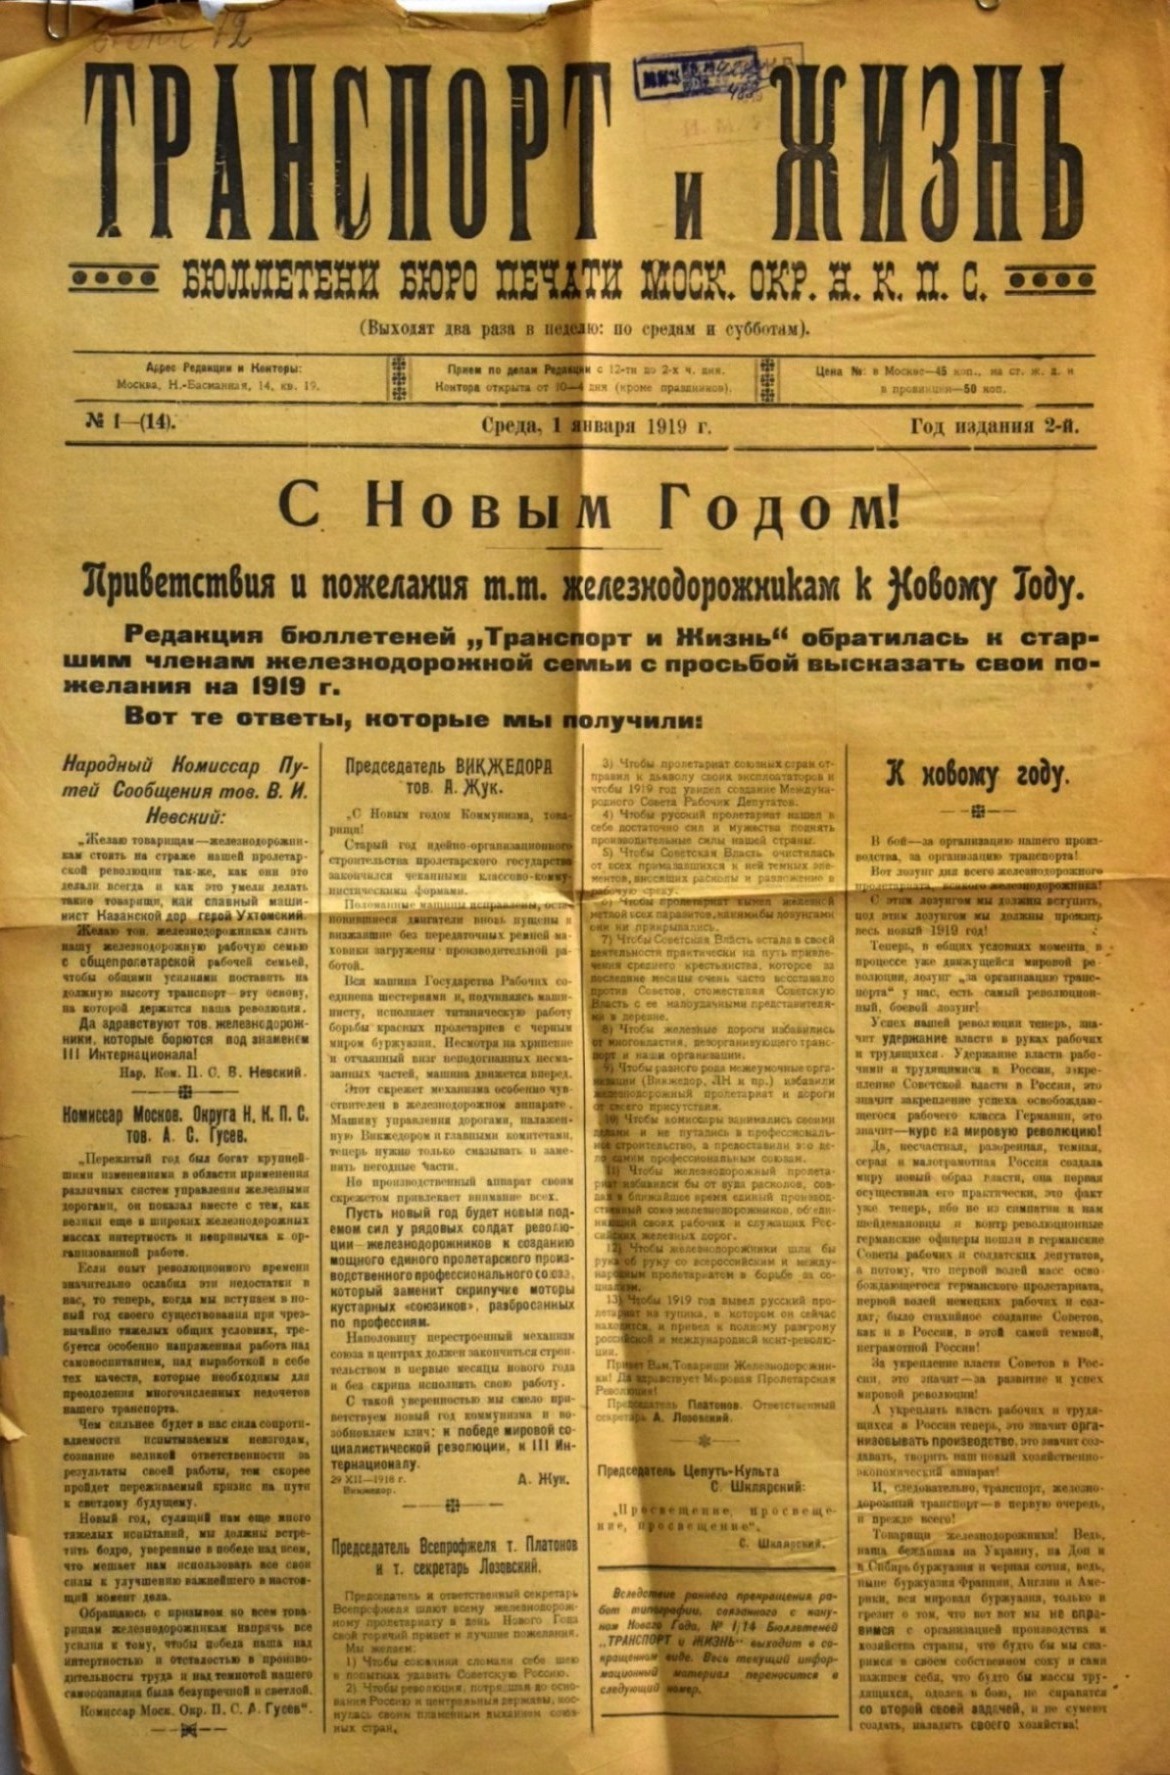 Газета "Транспорт и жизнь" № 1(14) від 1 січня 1919 р. 